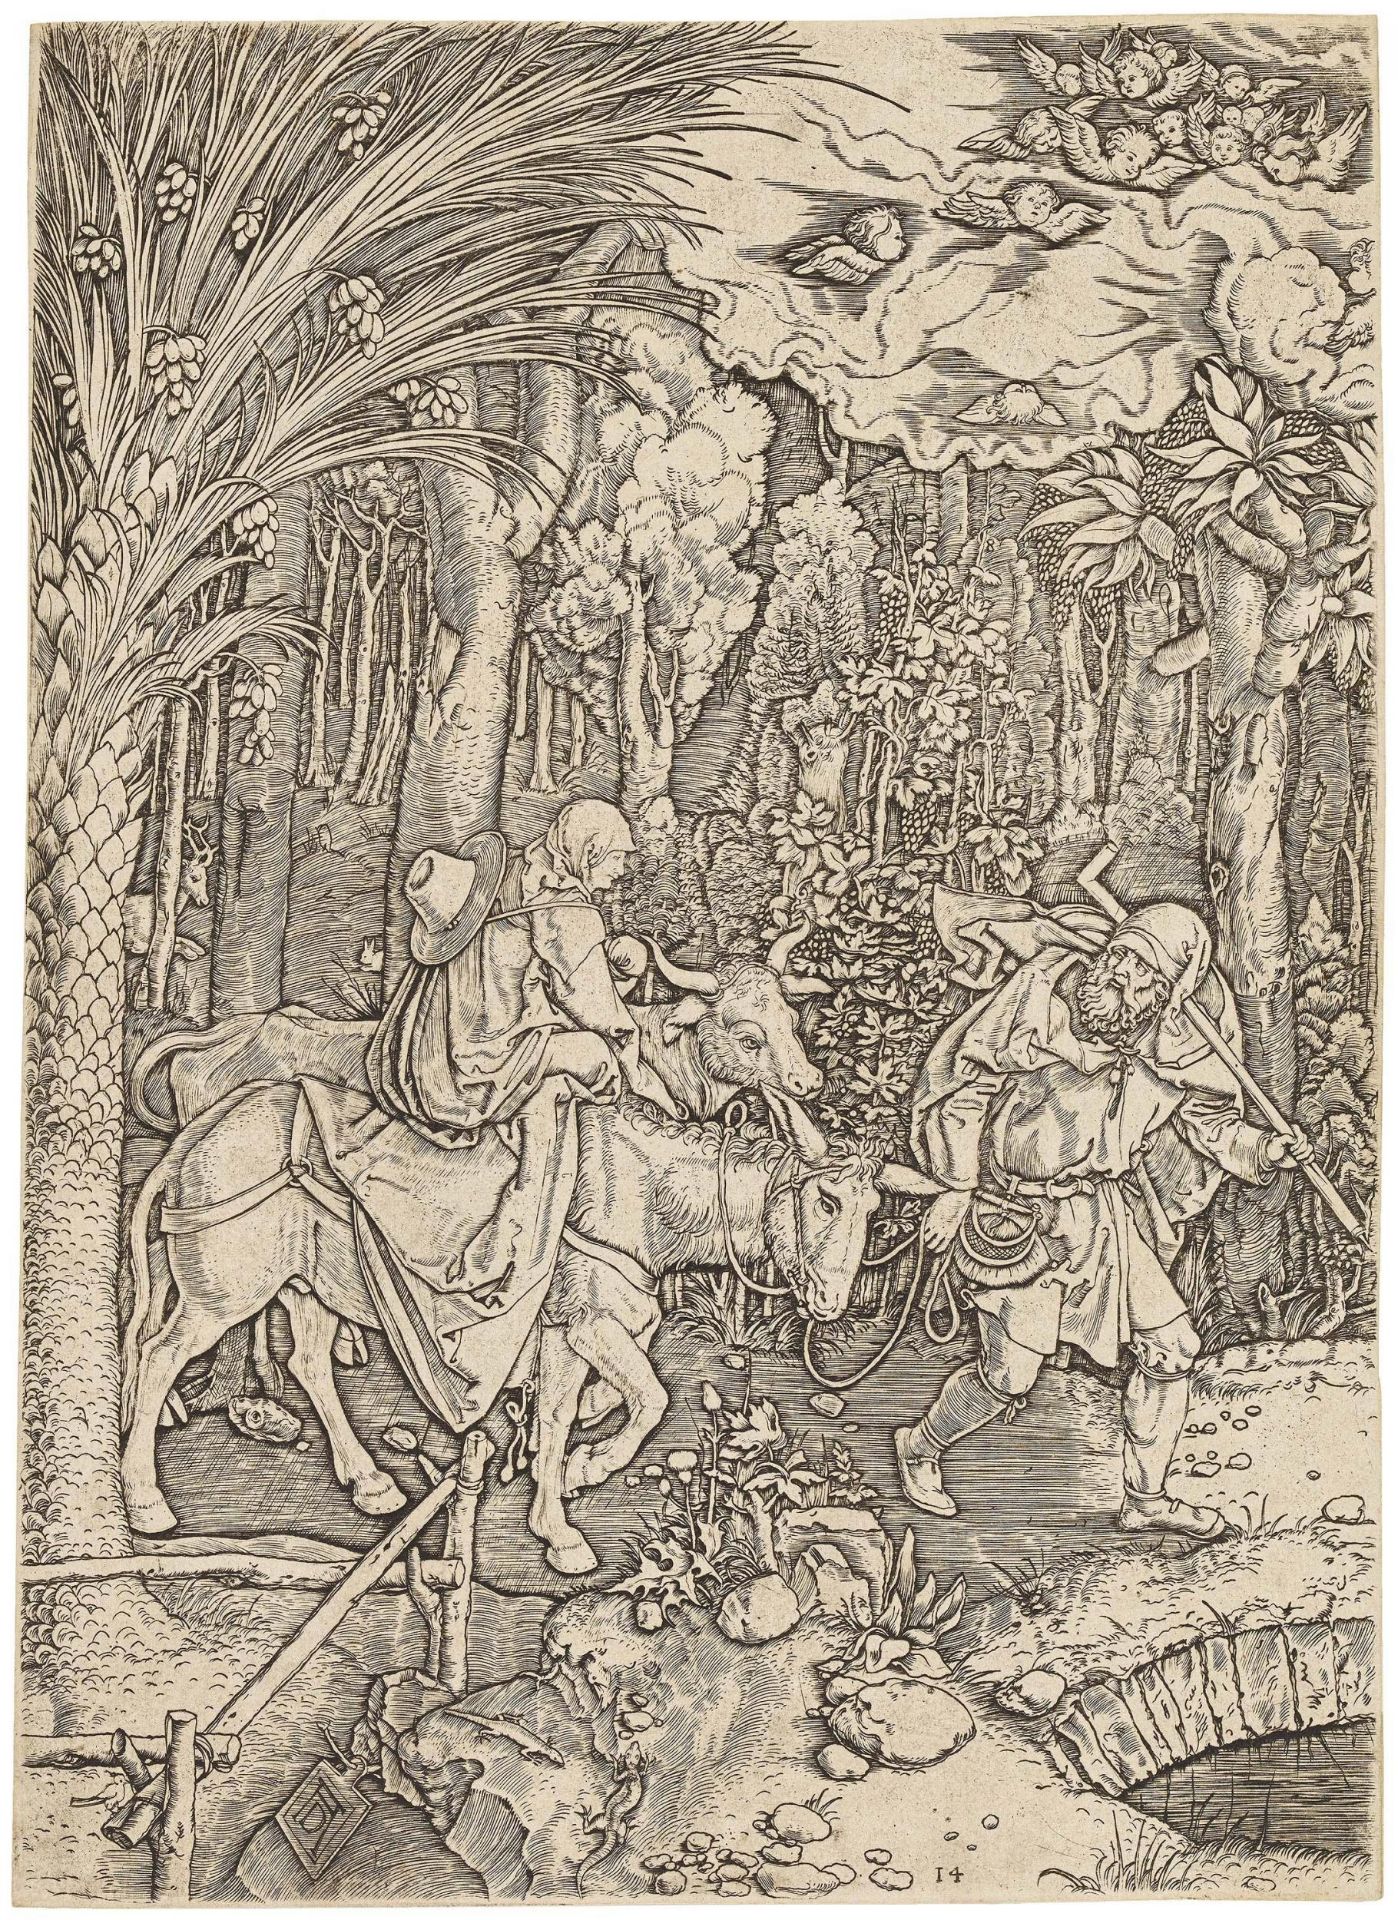 Marcantonio Raimondi ca. 1480 Molinella - 1534 Bologna: Life of the Virgin - Image 2 of 20